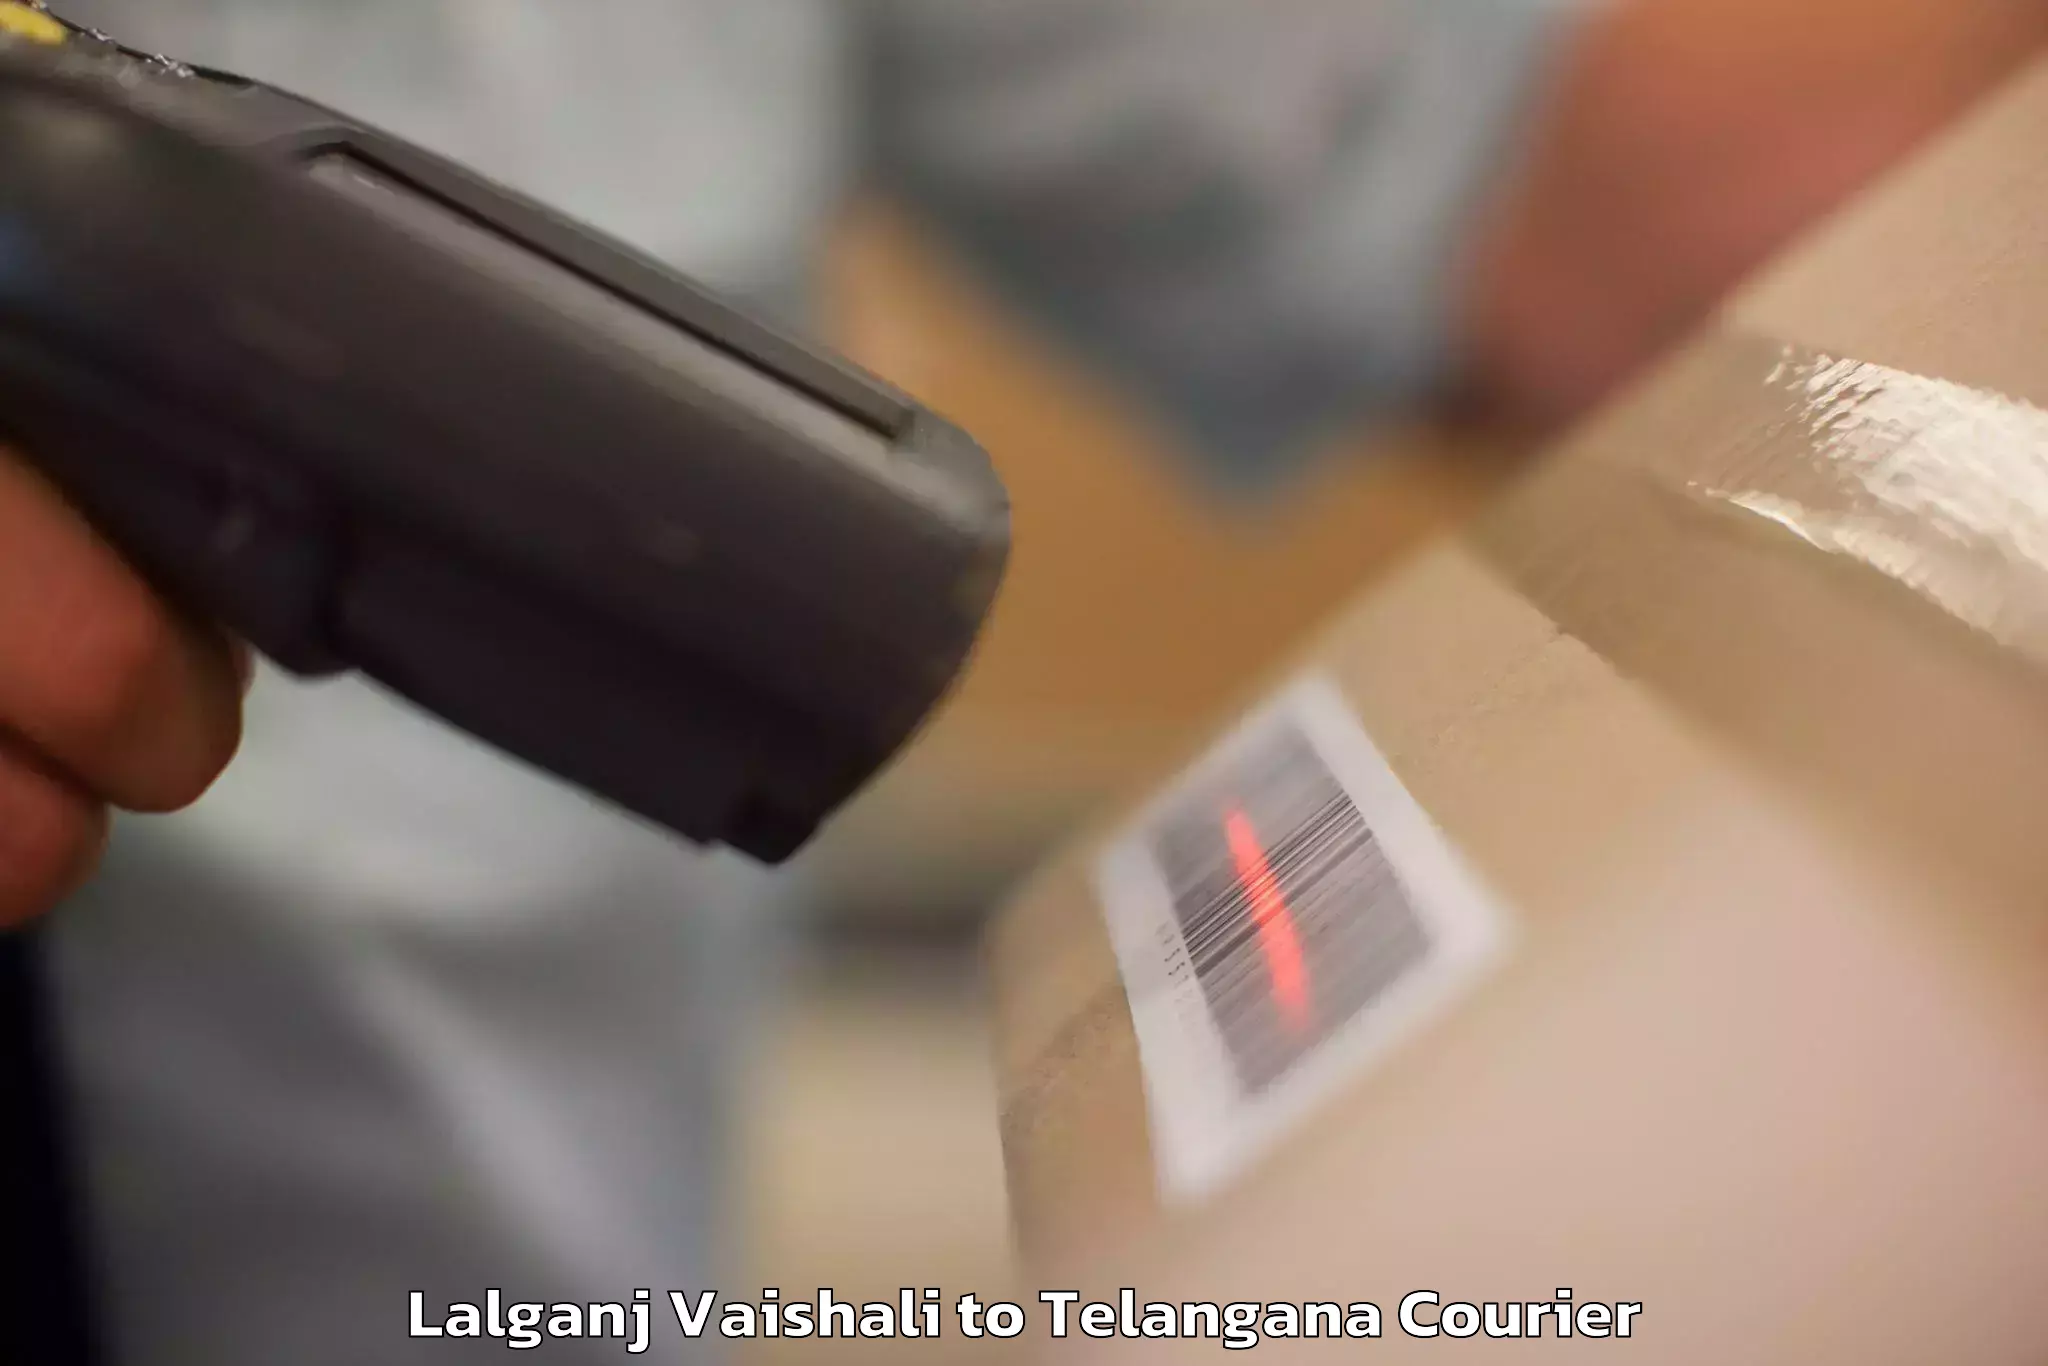 Online luggage shipping booking Lalganj Vaishali to Telangana